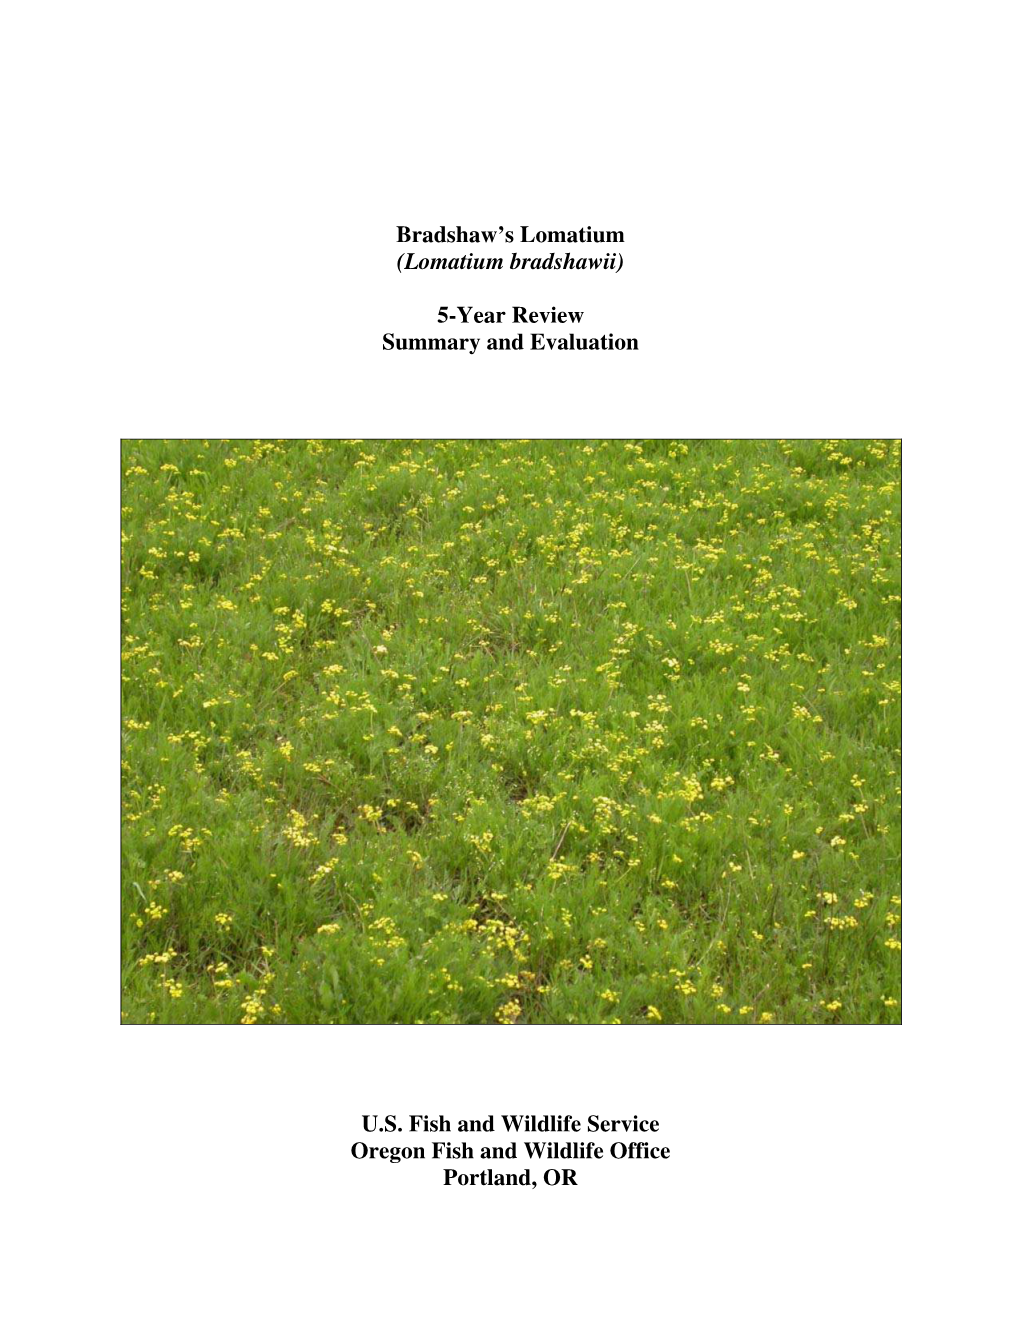 Bradshaw's Lomatium (Lomatium Bradshawii) 5-Year Review